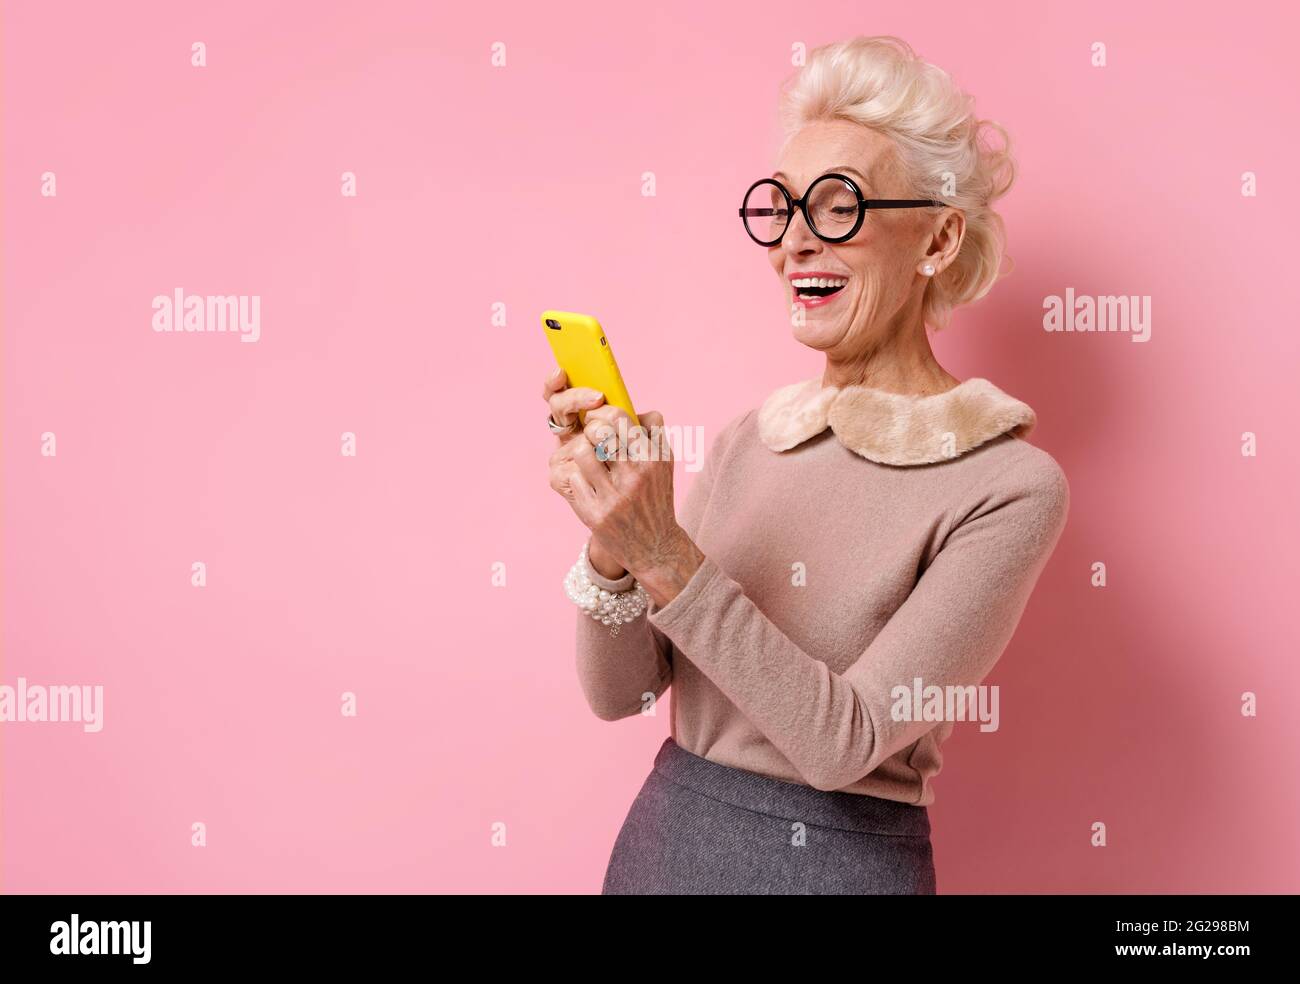 La nonna usa il telefono, controlla la presenza di nuovi messaggi. Foto di donna anziana gentile su sfondo rosa. Foto Stock